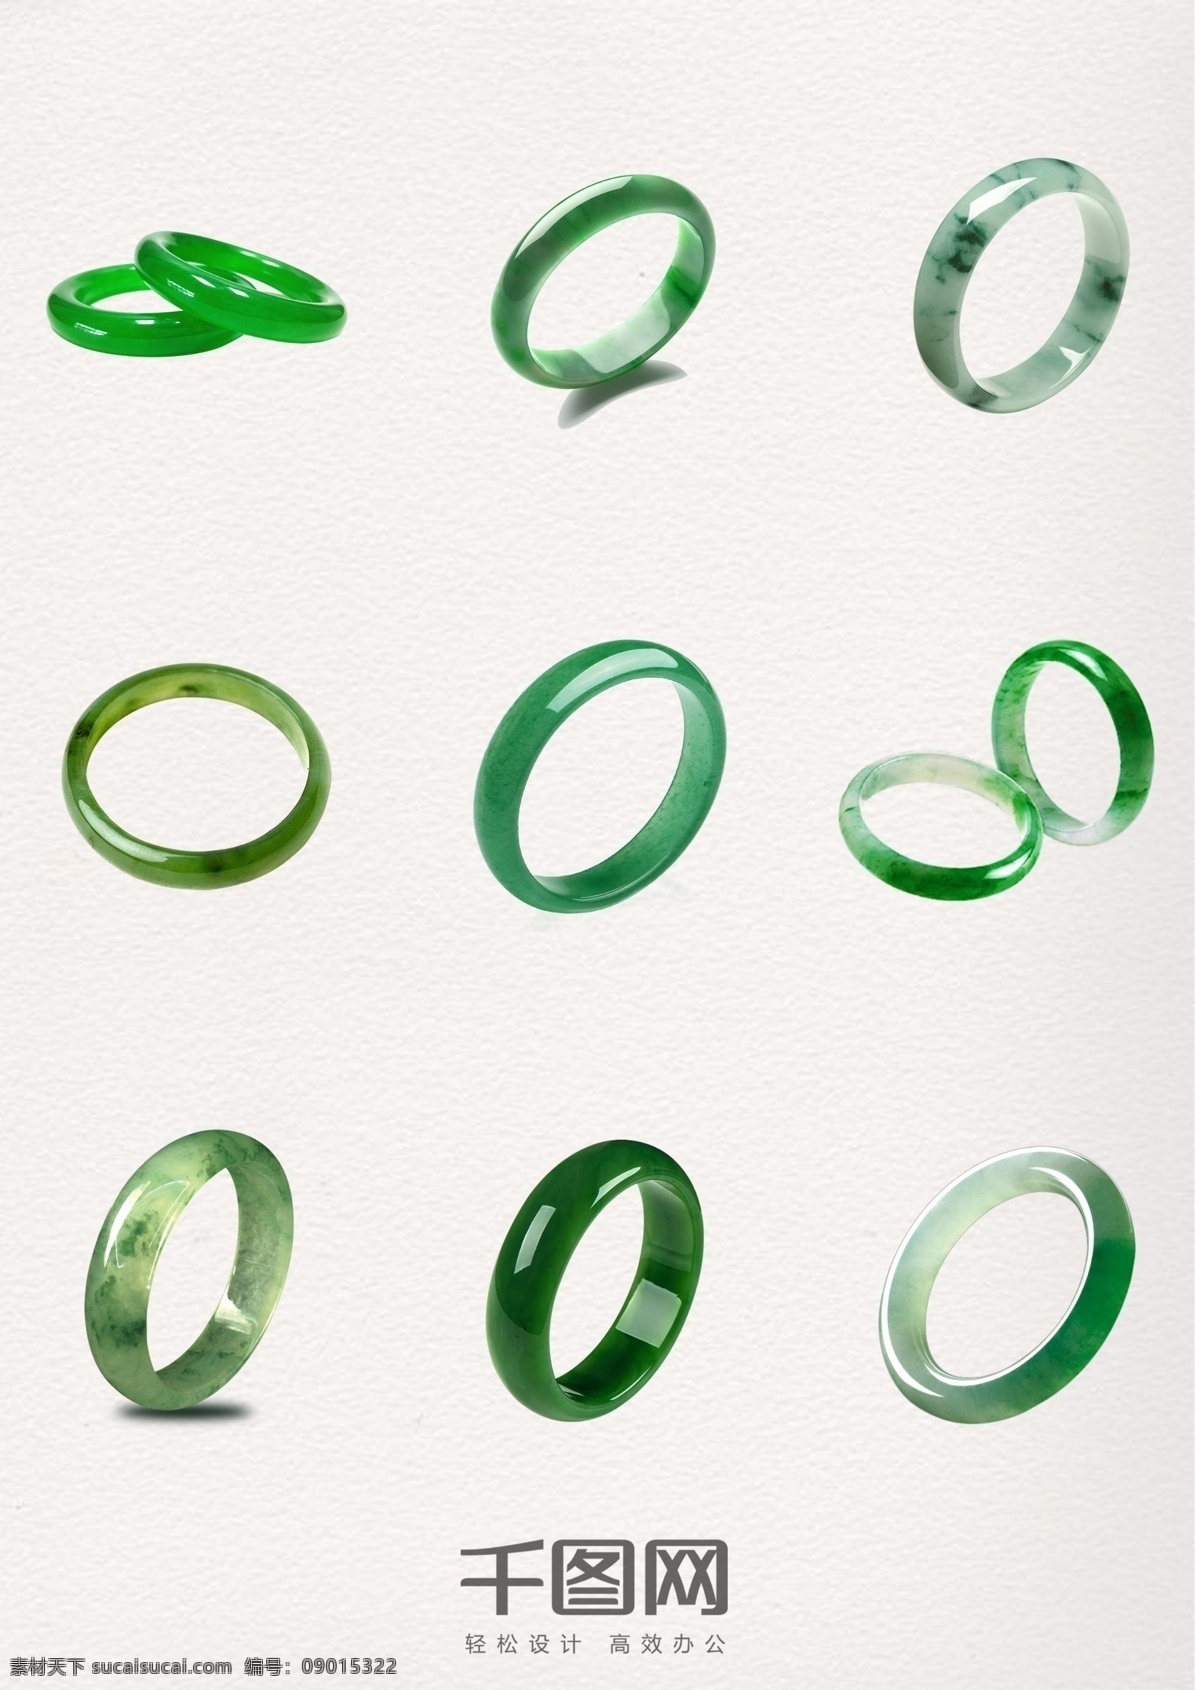 高清 精美 绿色 翡翠 手 环 手环